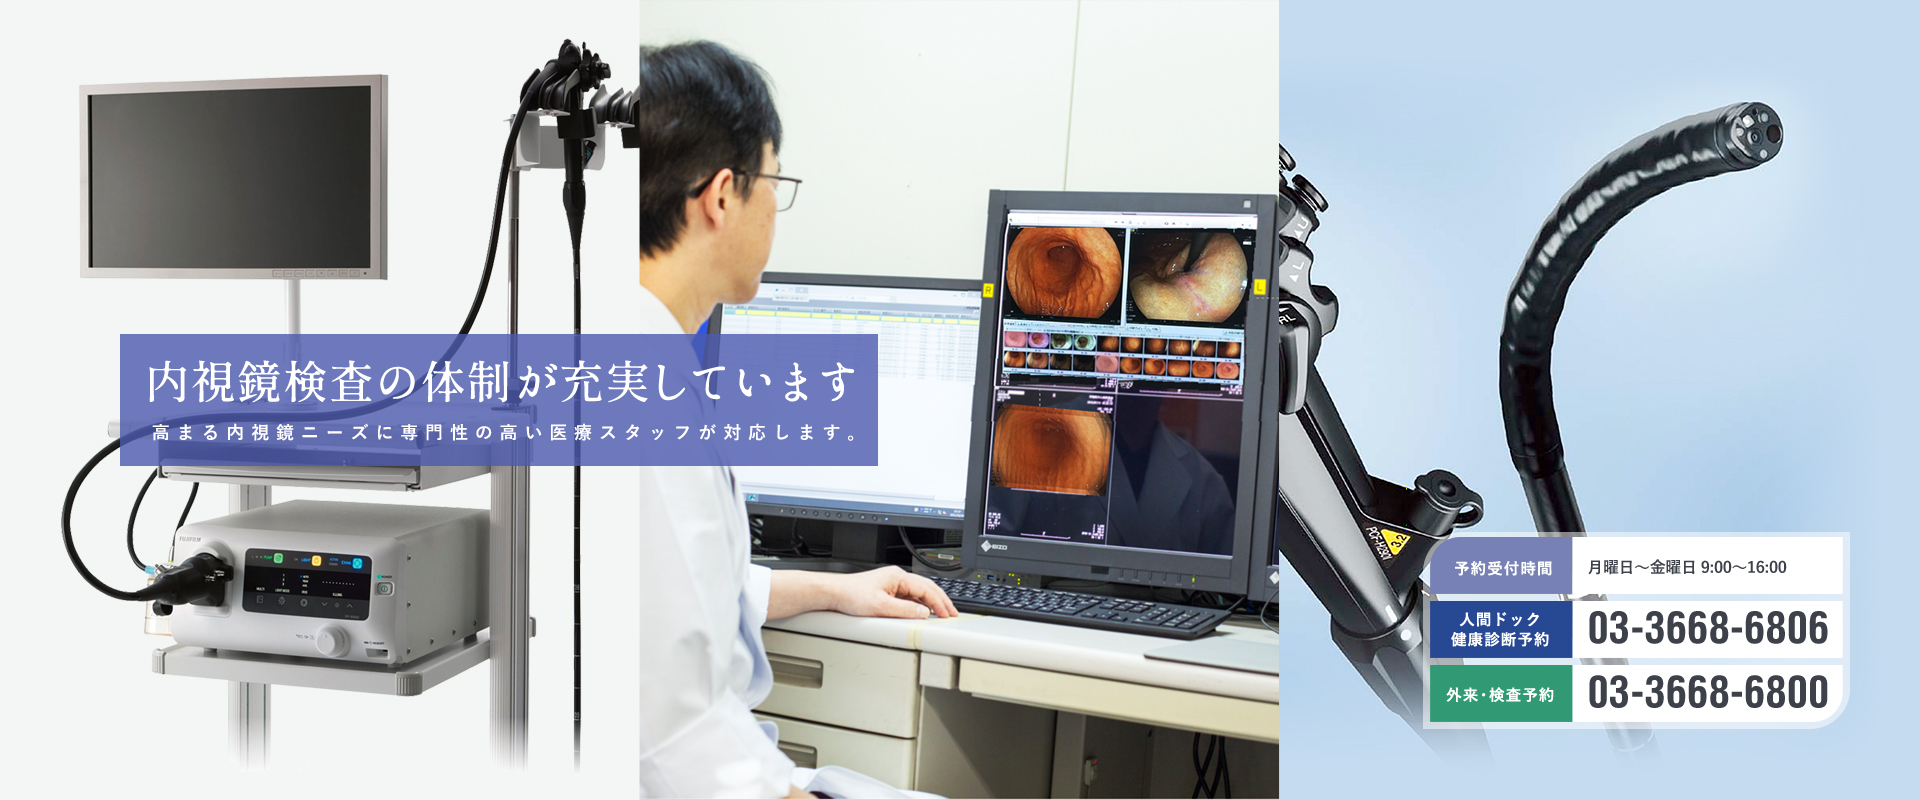 内視鏡検査の体制が充実しています。高まる内視鏡ニーズに専門性の高い医療スタッフが対応します。